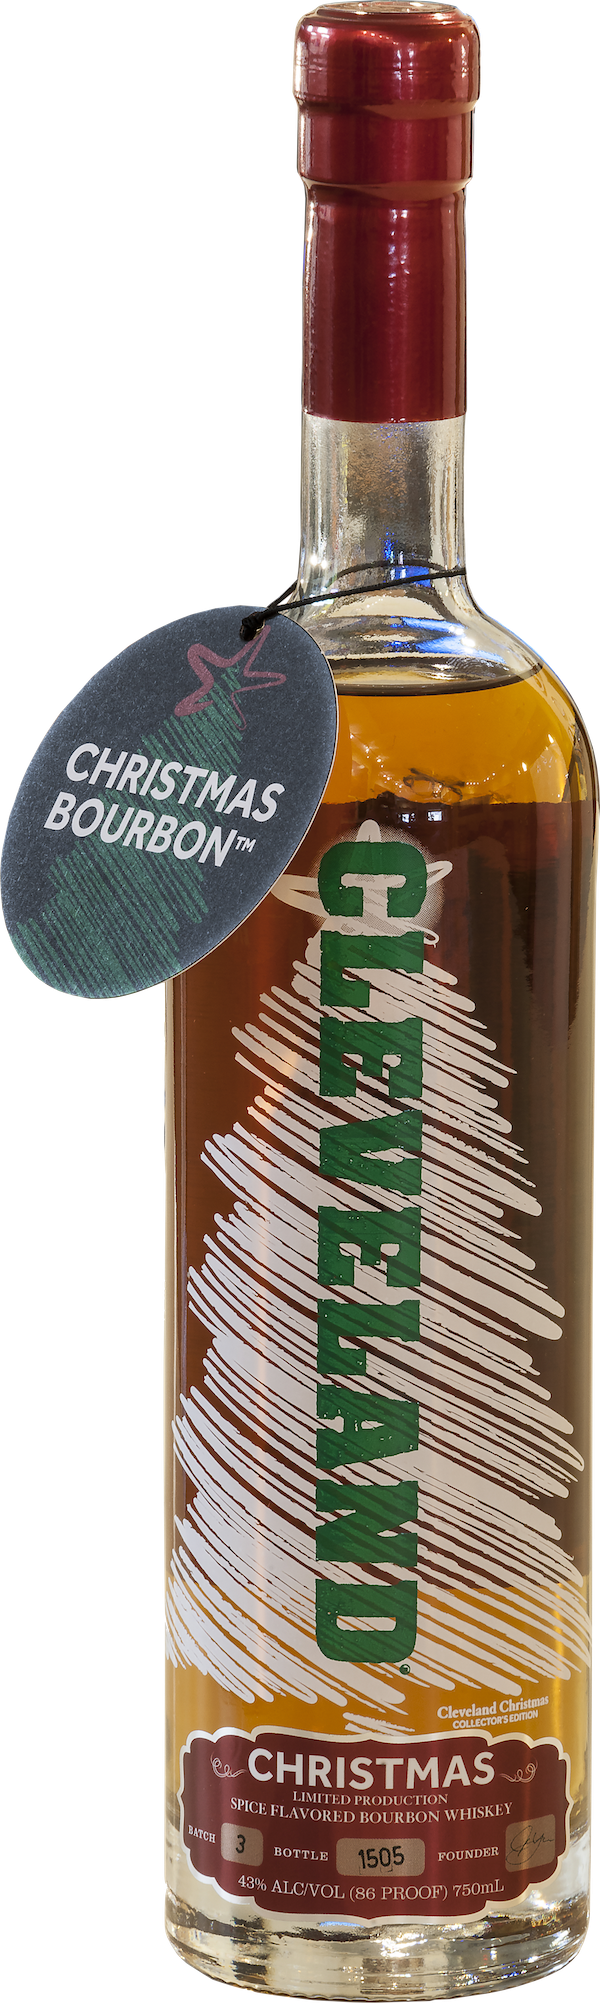 Christmas Bourbon Drink Recipes : Cranberry Bourbon ...